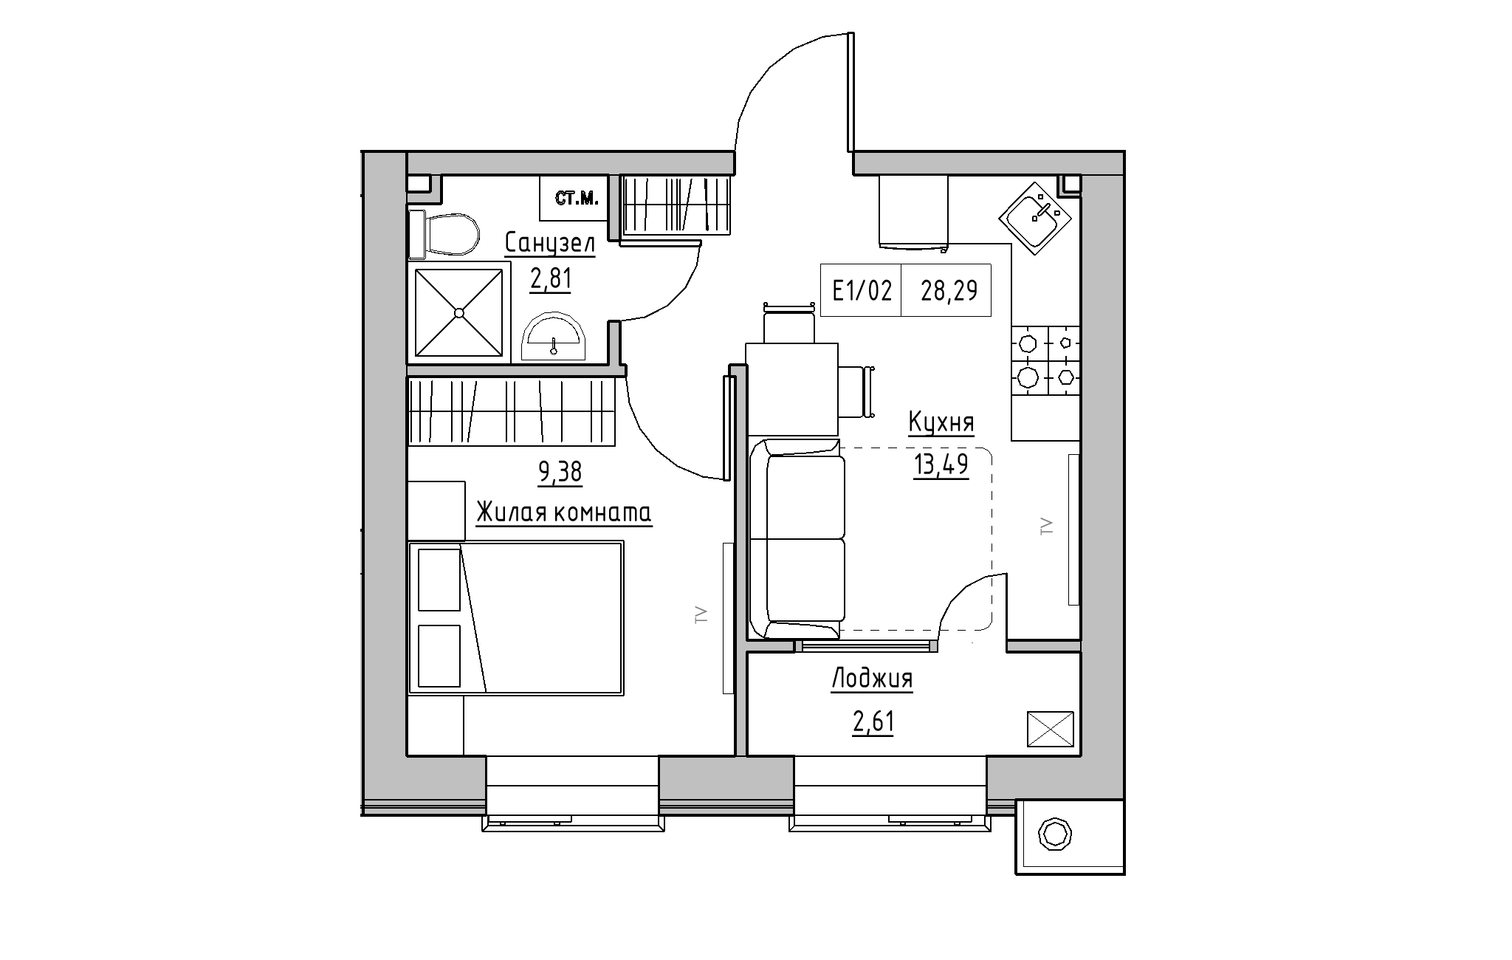 Планировка 1-к квартира площей 28.29м2, KS-013-02/0013.